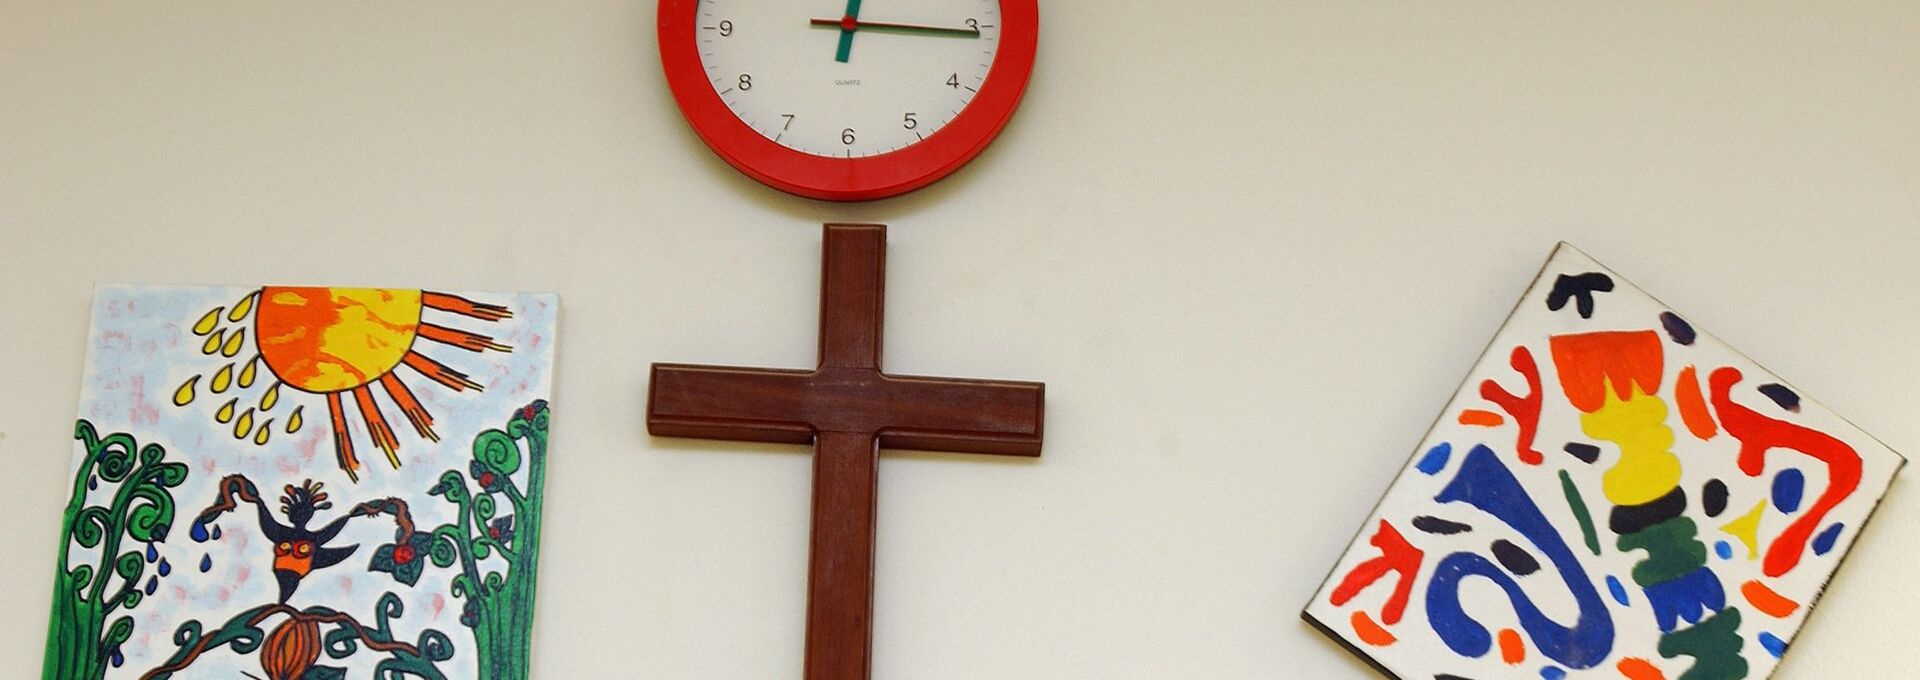 In dem Klassenzimmer einer Schule hängen über der Türe ein Kreuz, eine Uhr und zwei gemalte Bilder.